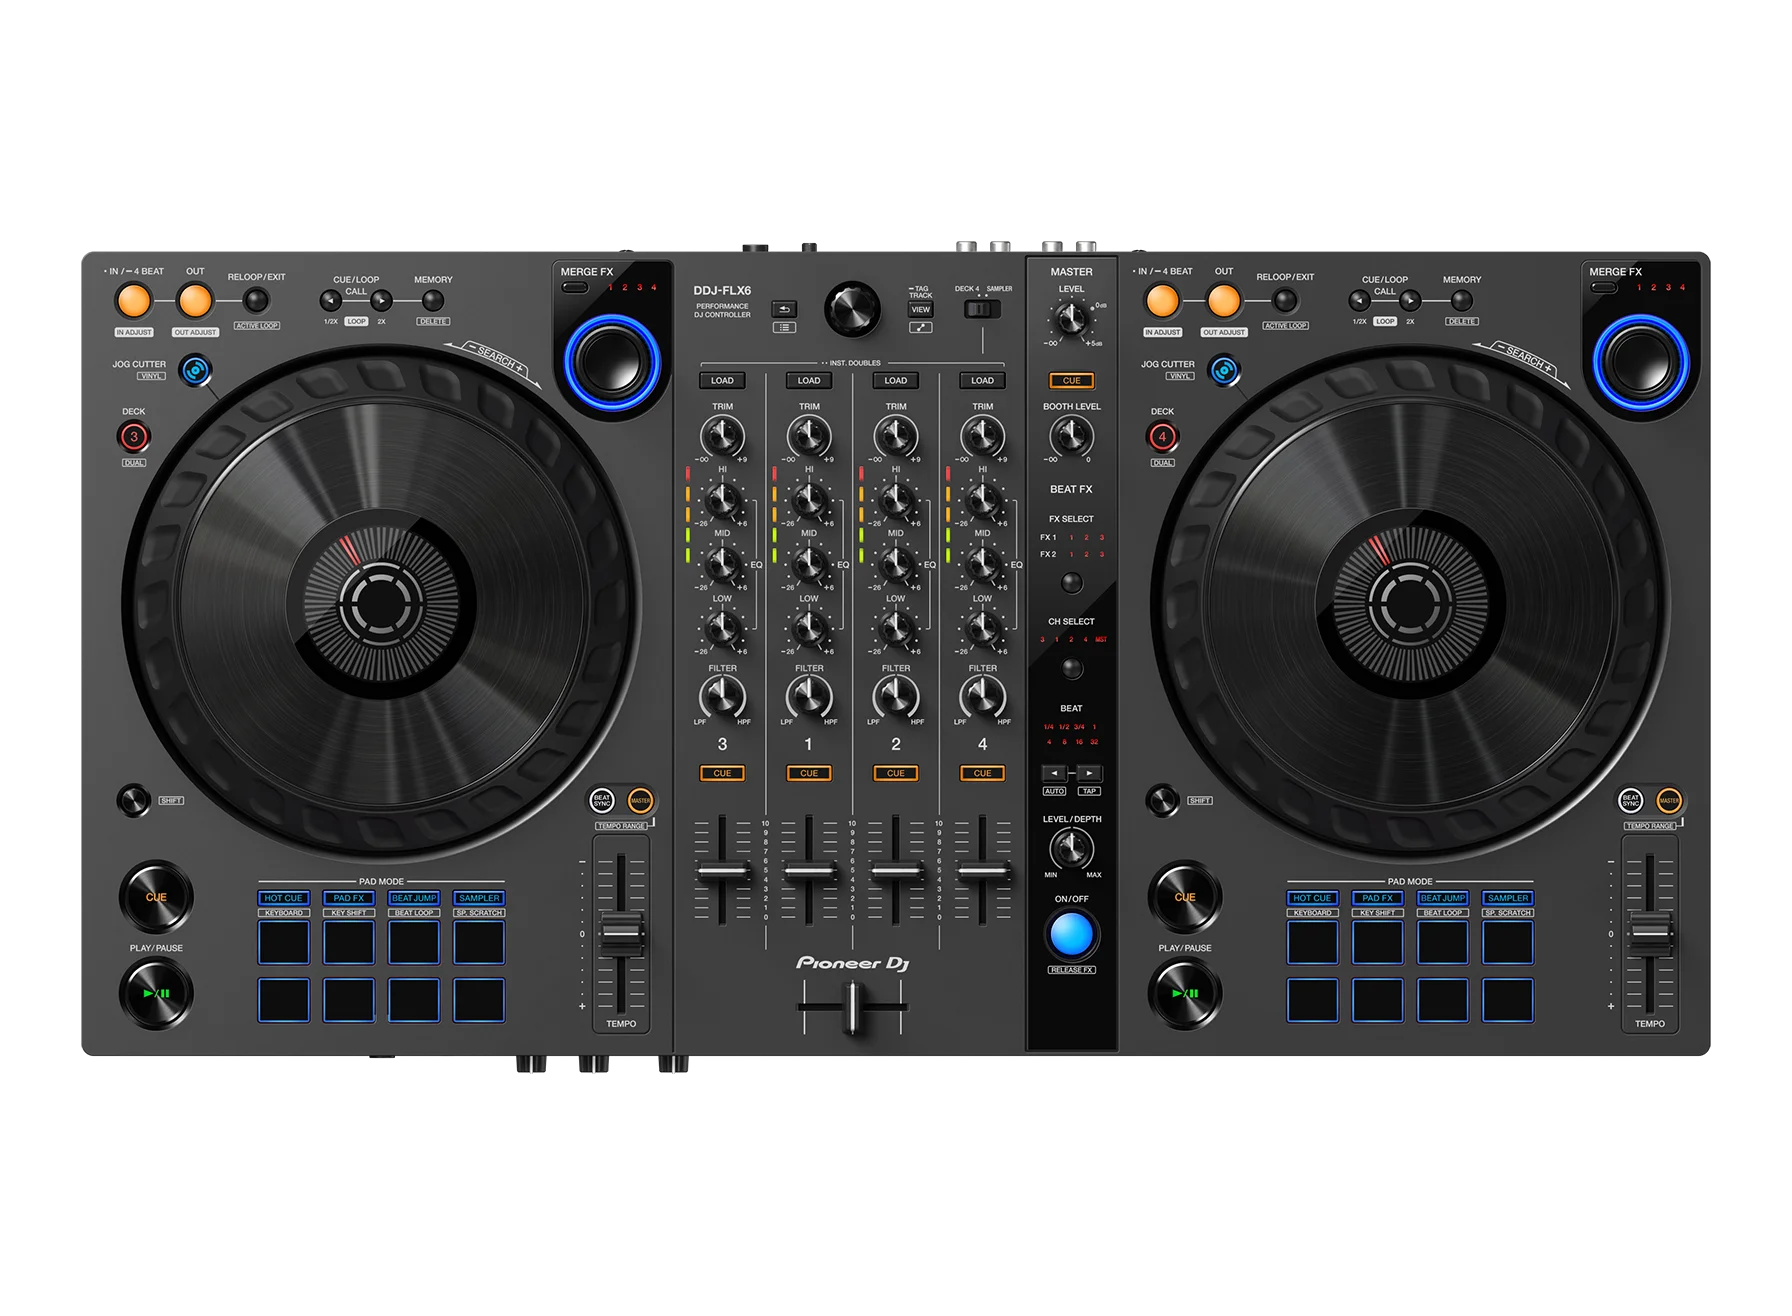 Mesa de Mezclas DJ PIONEER DJM-500 de 4 Canales con efectos de segunda mano